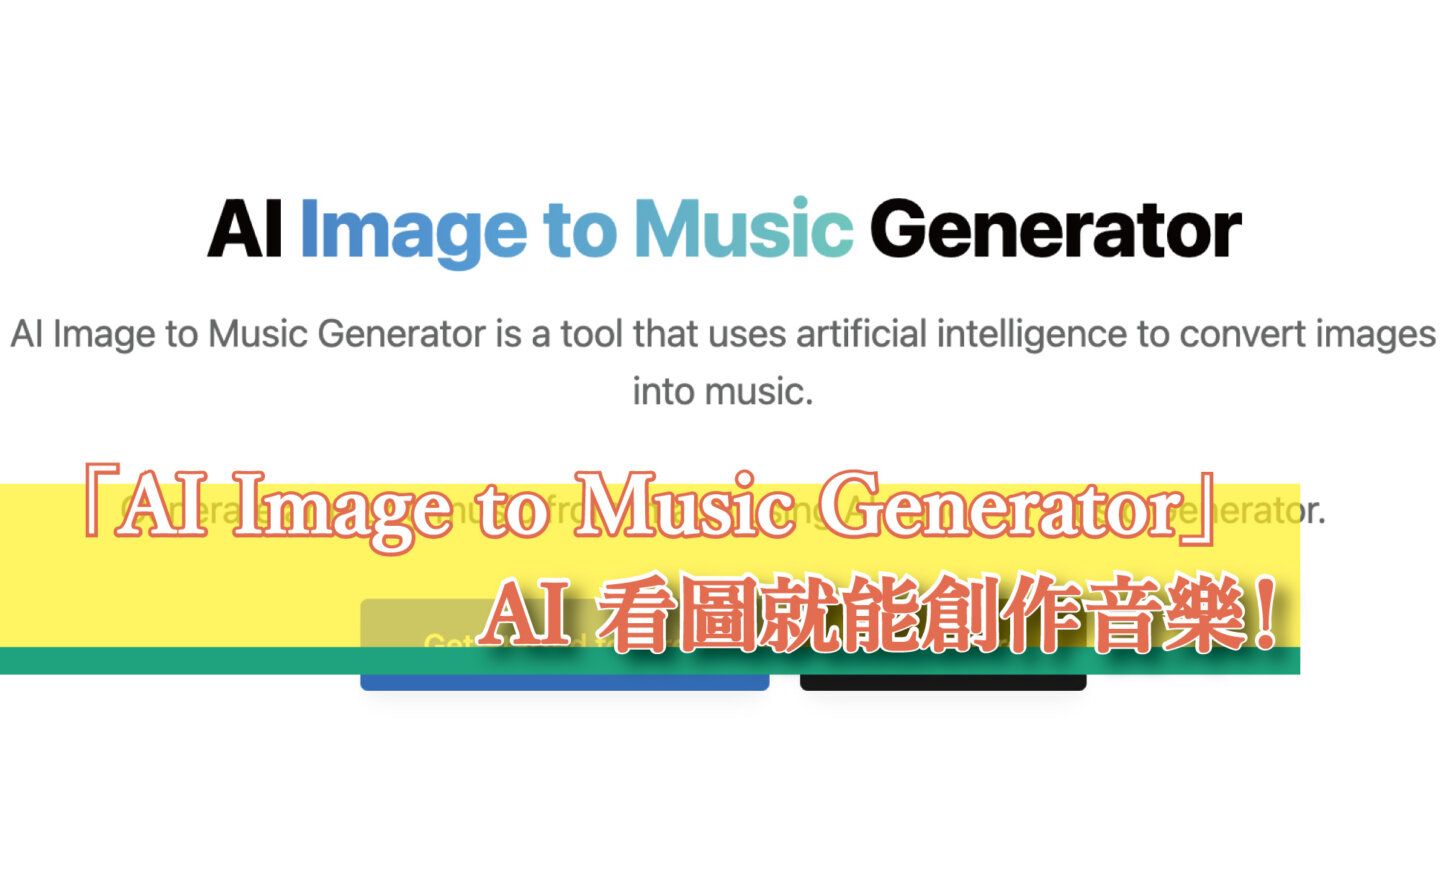 【免費】「AI Image to Music Generator」圖片轉音樂工具，AI 看圖就能創作音樂！